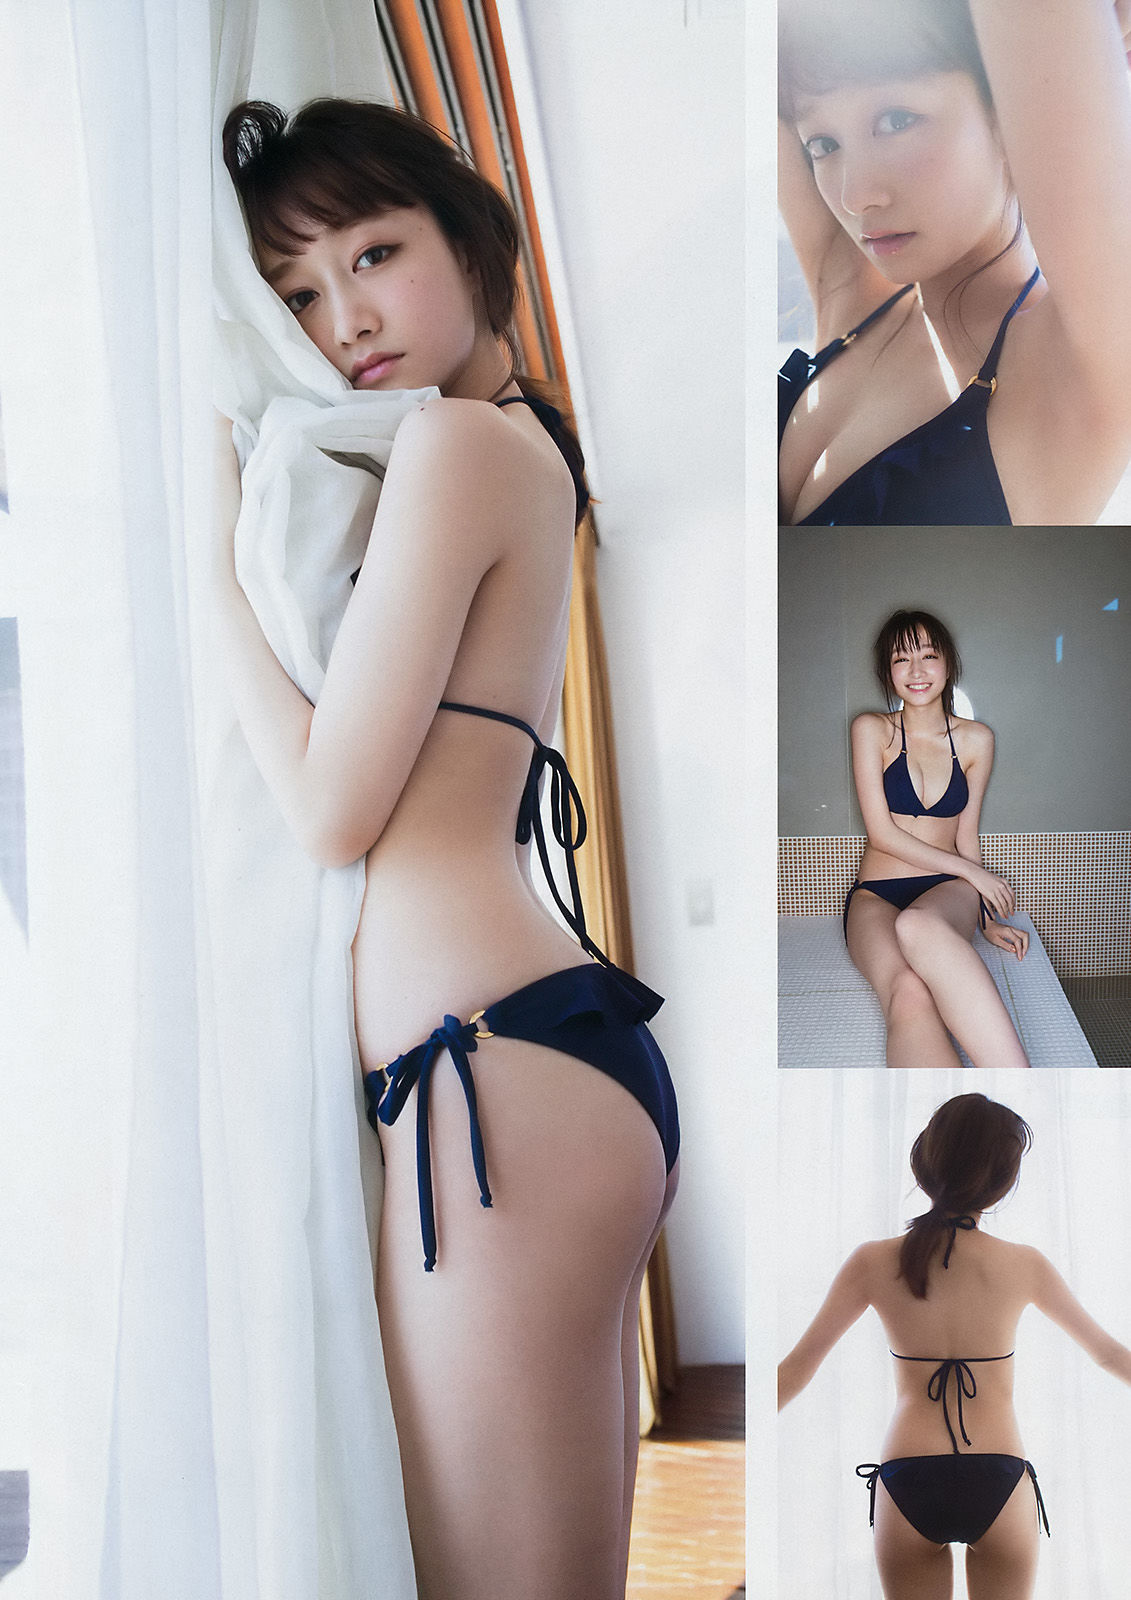 [Young Magazine]日本萌妹子:福岛雪菜无圣光私房照片在线浏览(12P)